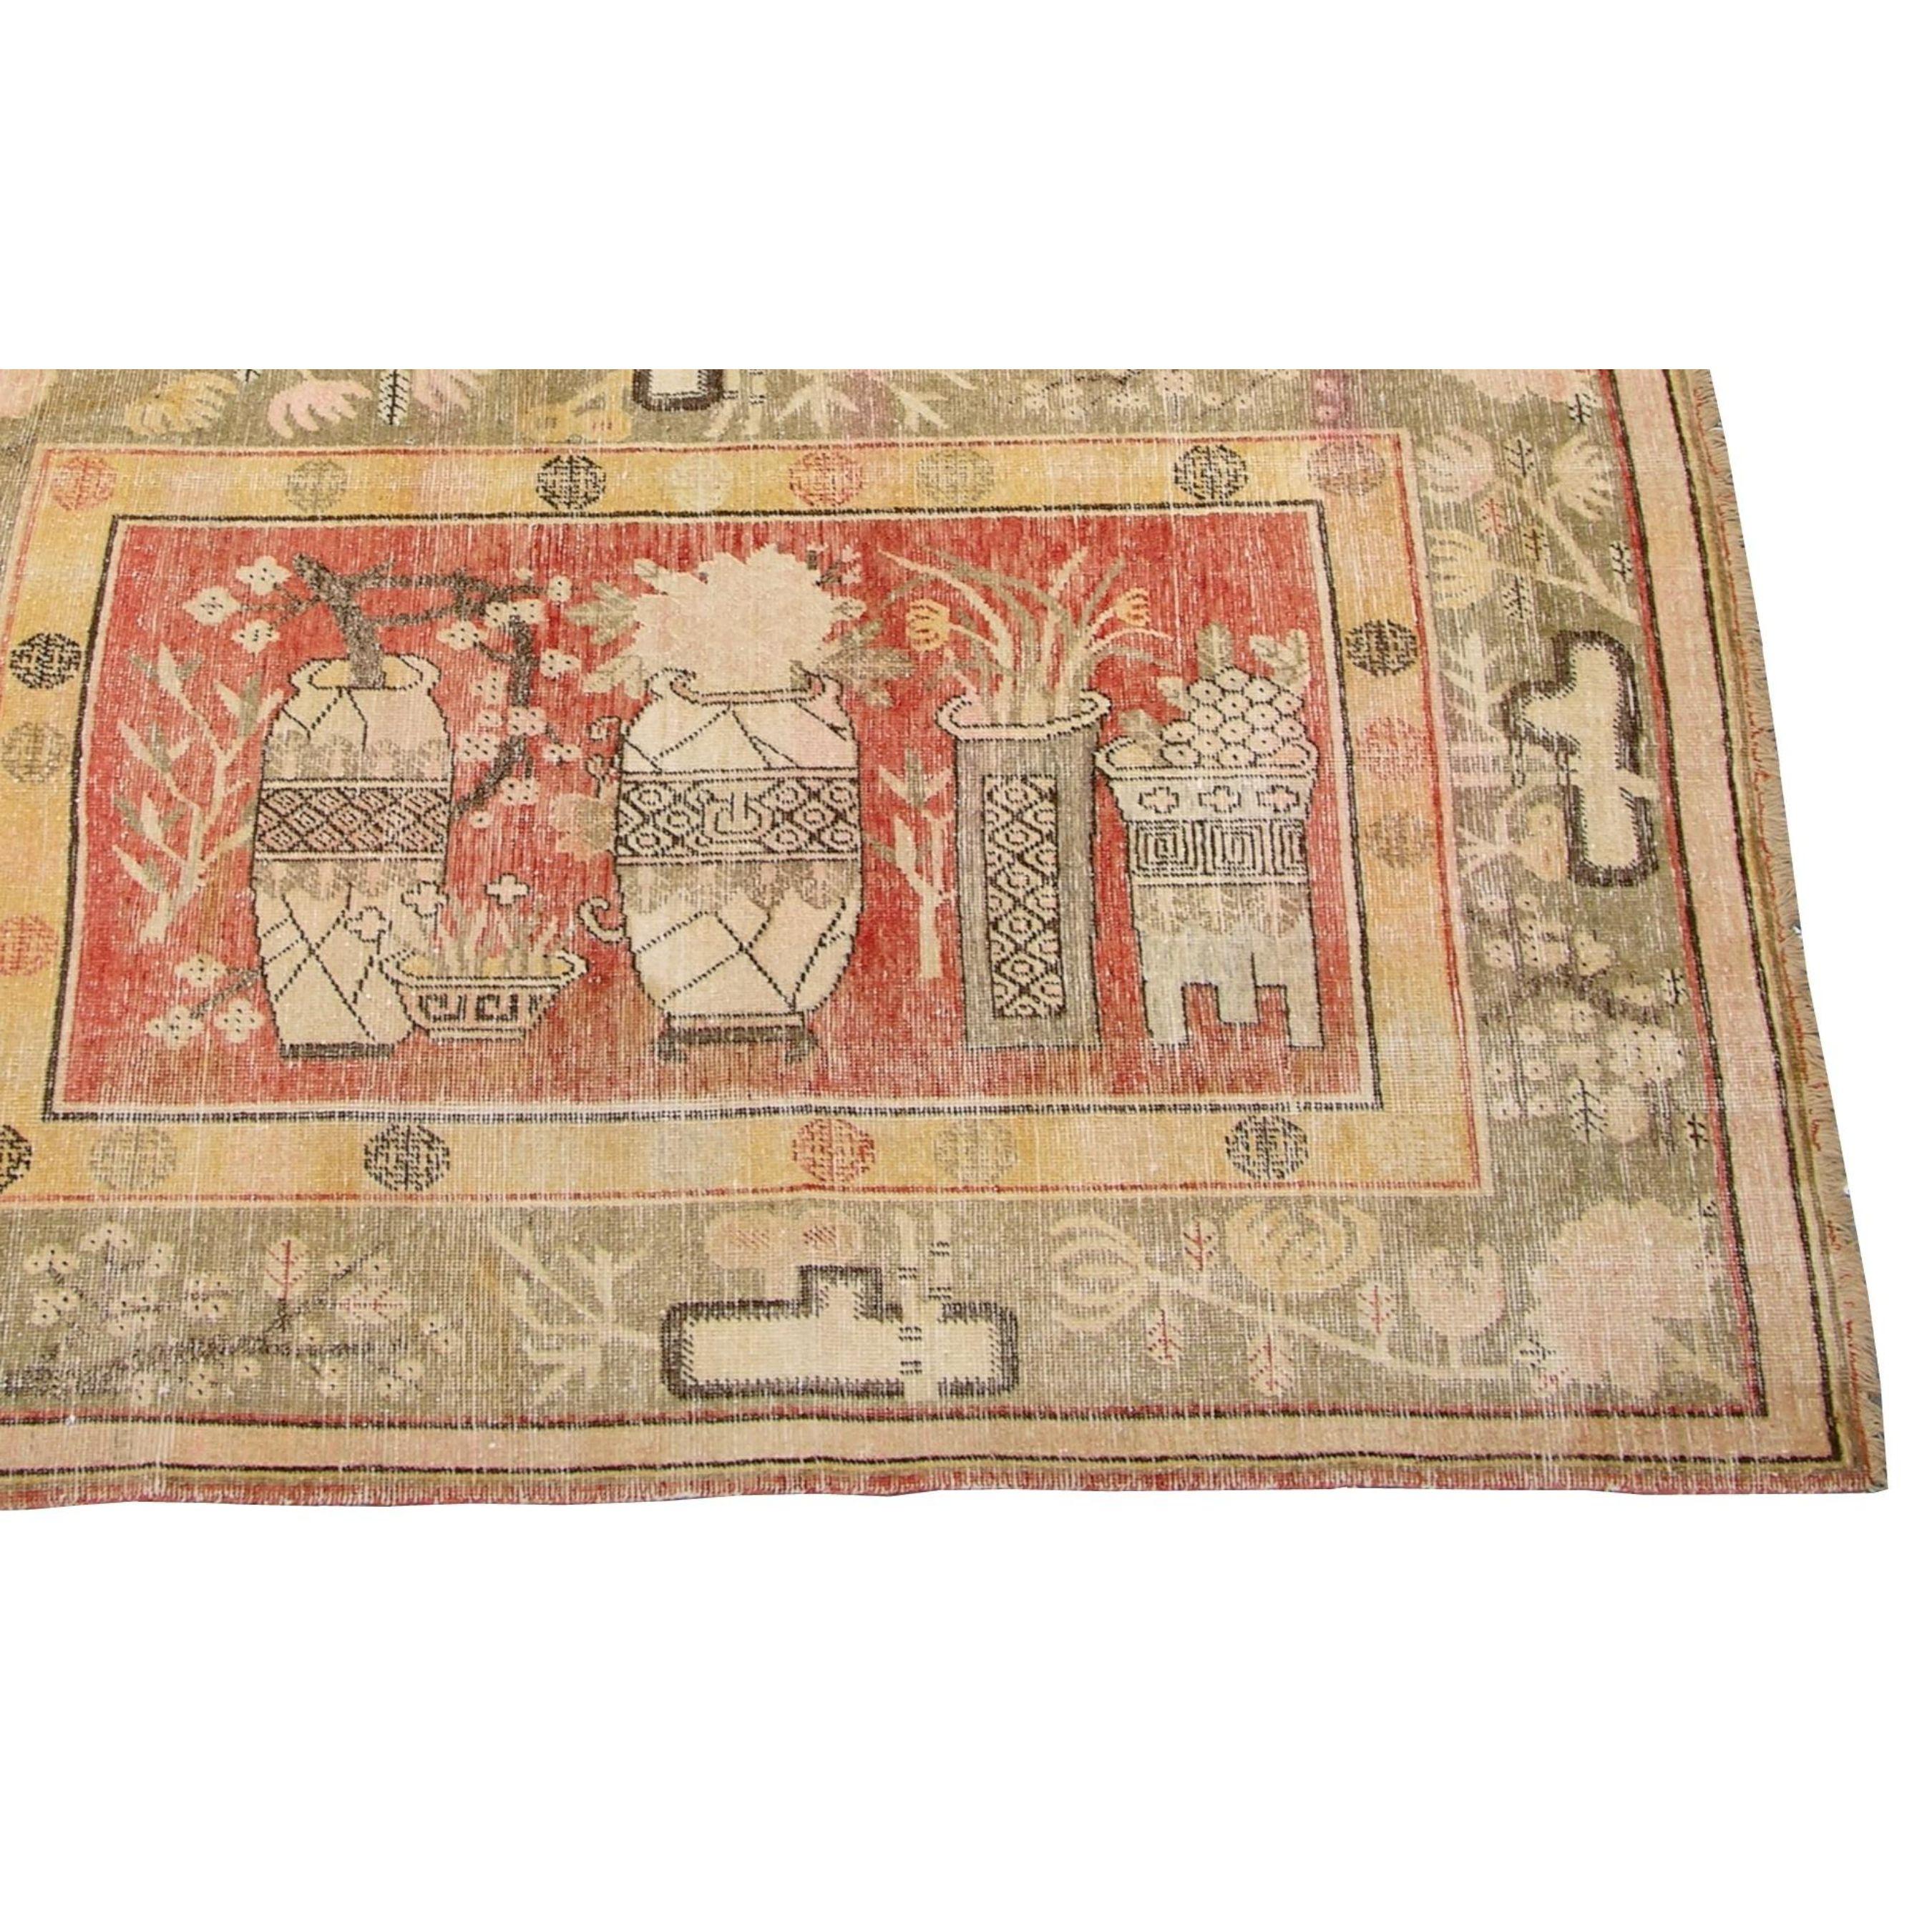 Antiker dekorativer Khotan Samarkand Teppich 6'10'' X 4'6'', Stammes- und traditionell, Wolle auf Baumwollbasis, pflanzlich gefärbt, Design und Farbkombination inspiriert von der Natur, in der sie lebten, wie Berge, Sterne, Sonne, Mond und andere